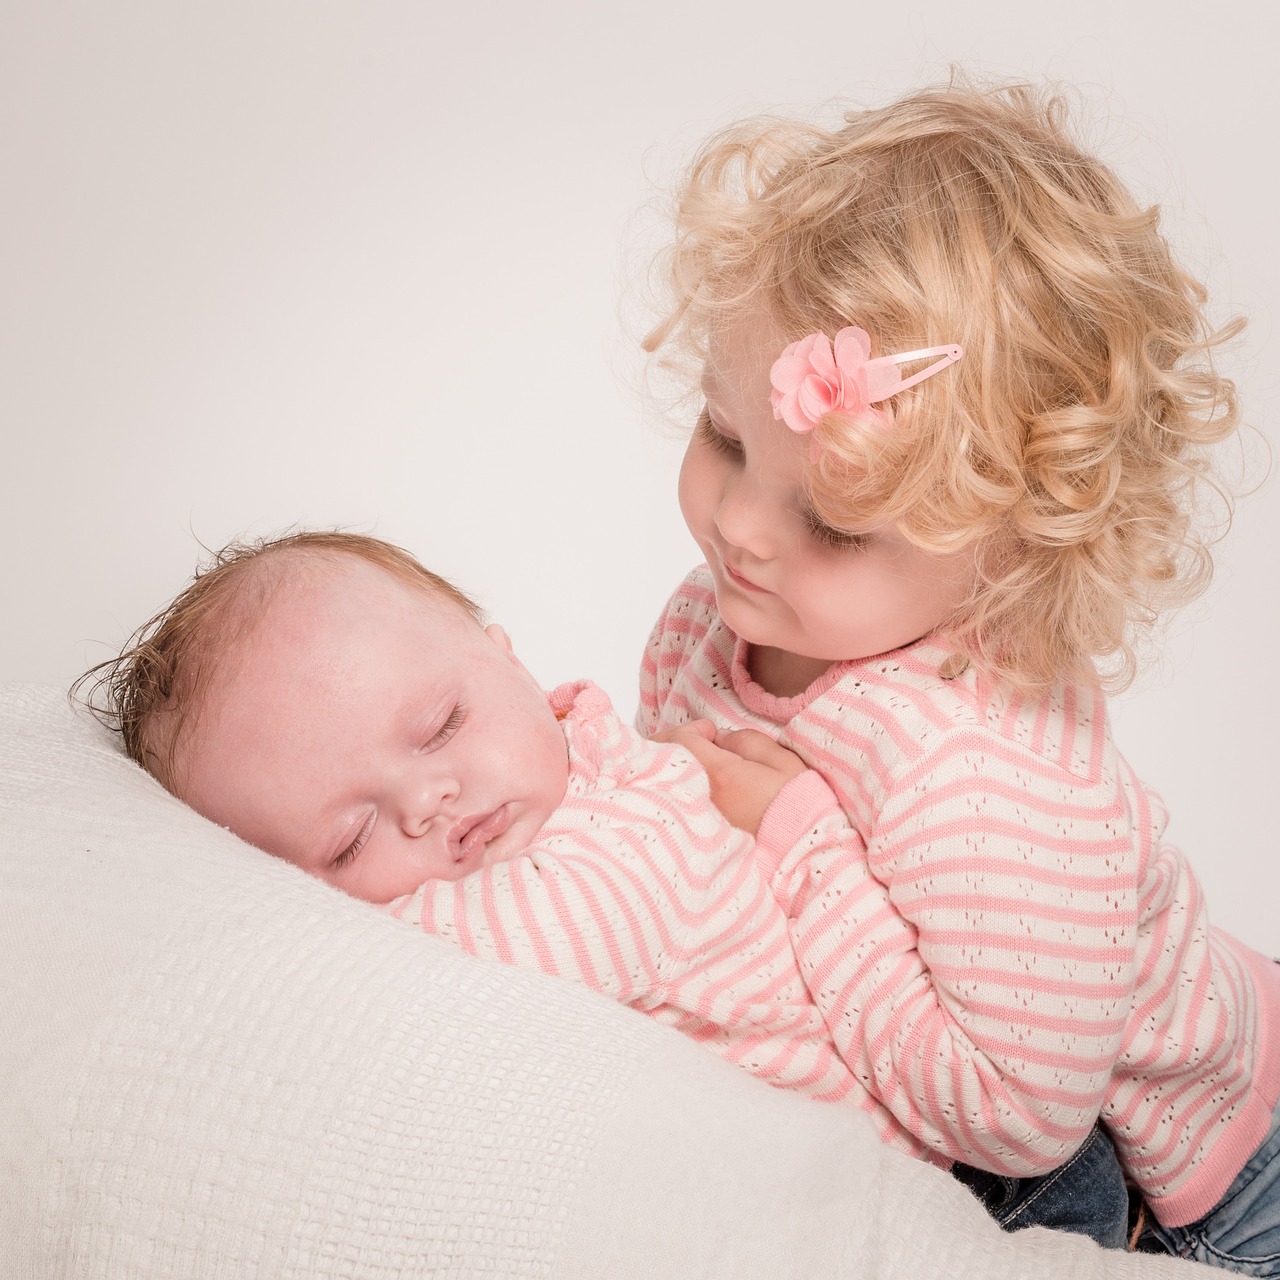 Ein kleines Mädchen, das auf seine schlafende kleine Schwester herabblickt | Quelle: Pixabay